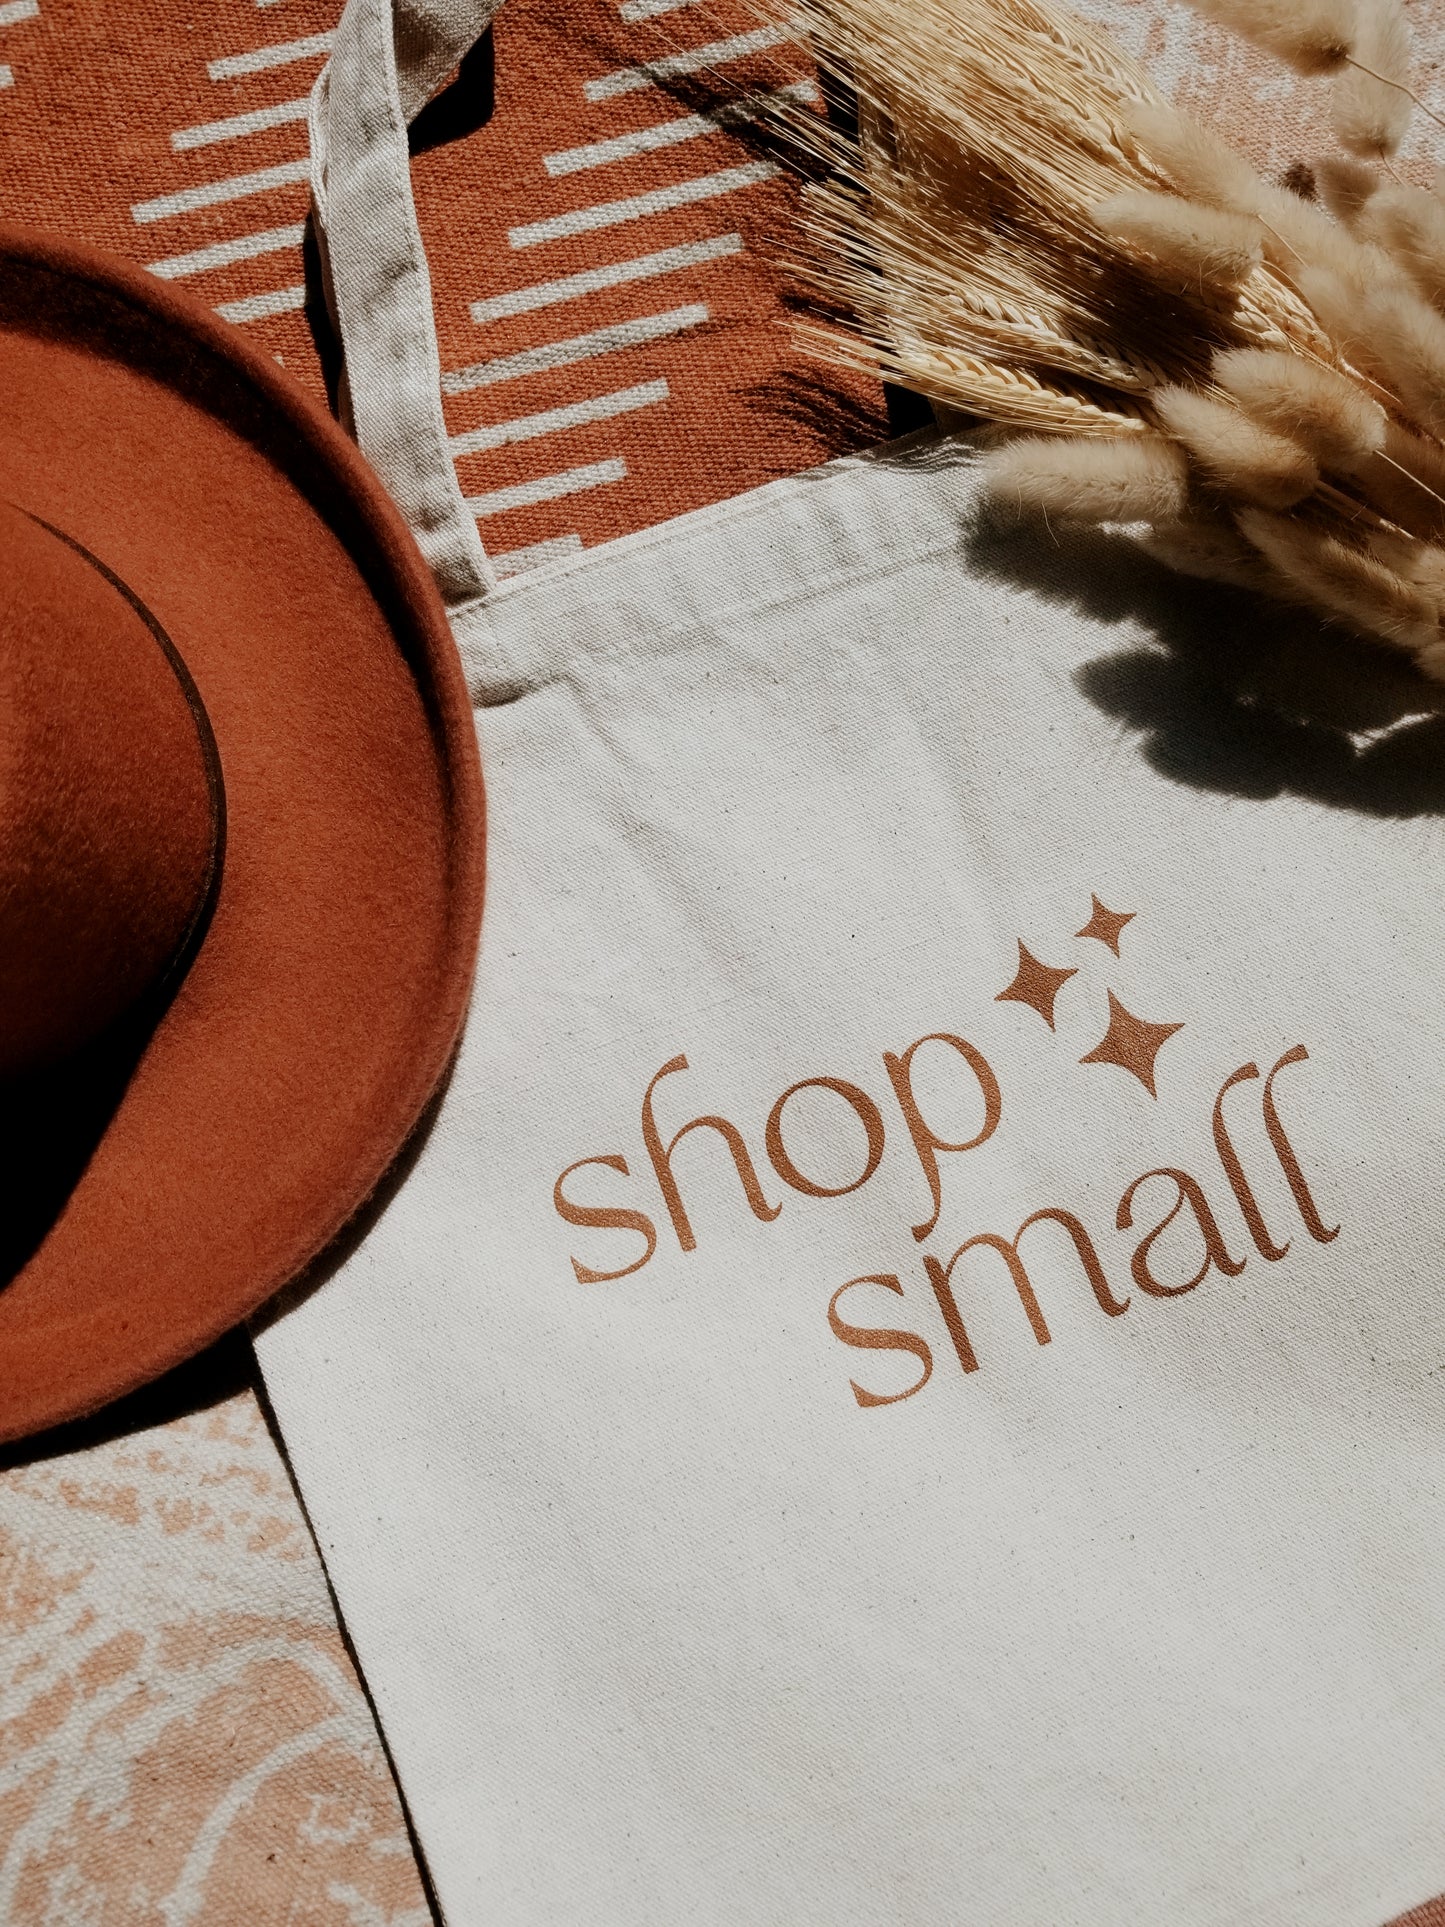 shop small tote